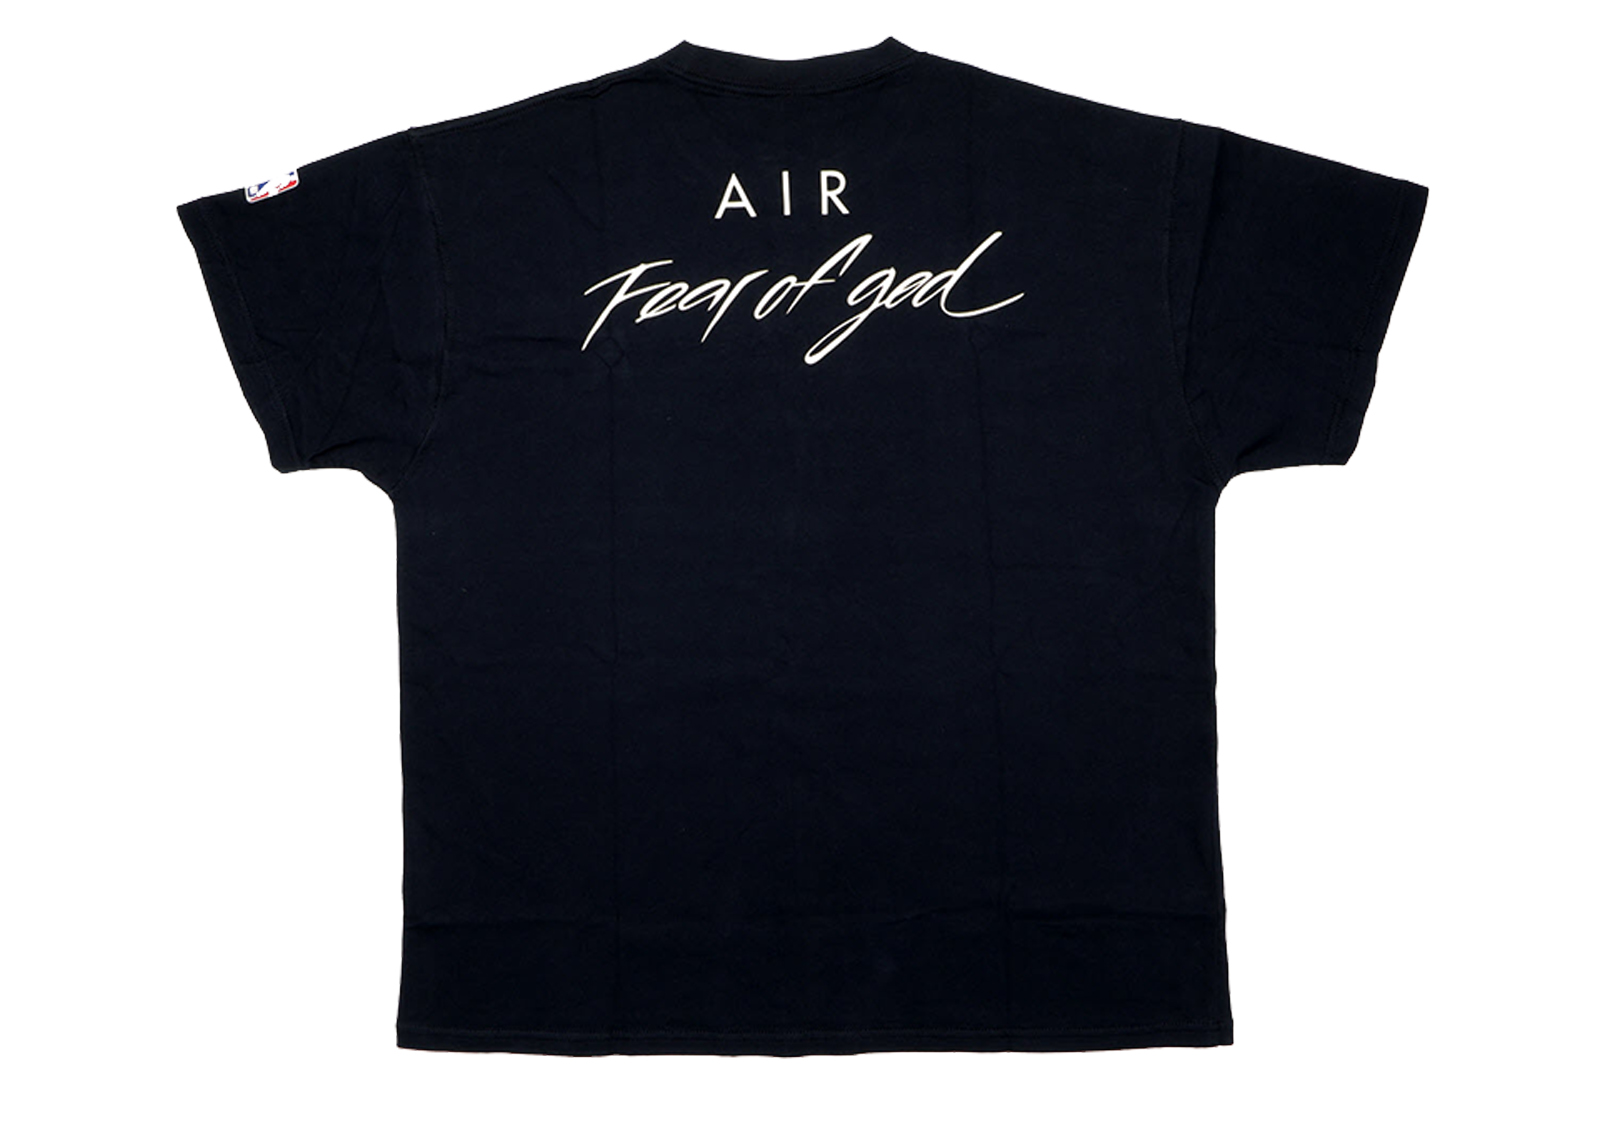 FEAR OF GOD x Nike Air Fear of God T-Shirt Black - FW19 - US